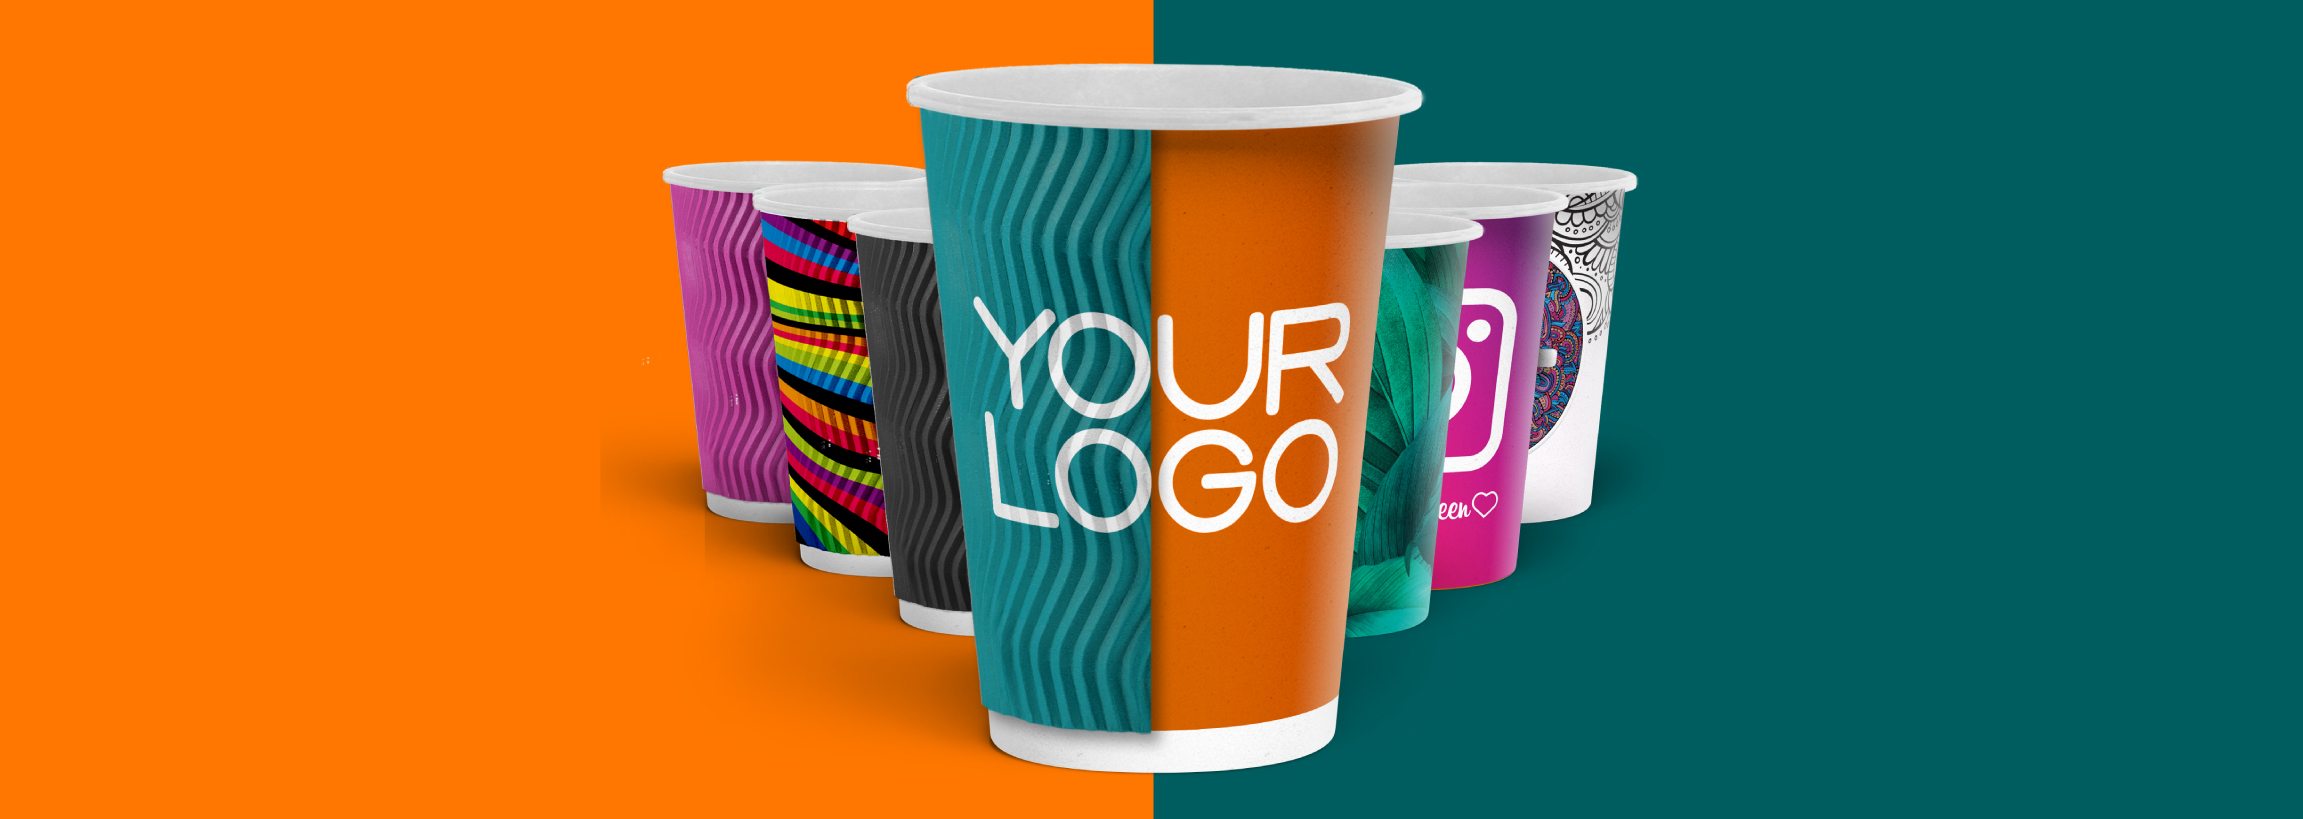 Branding Cups